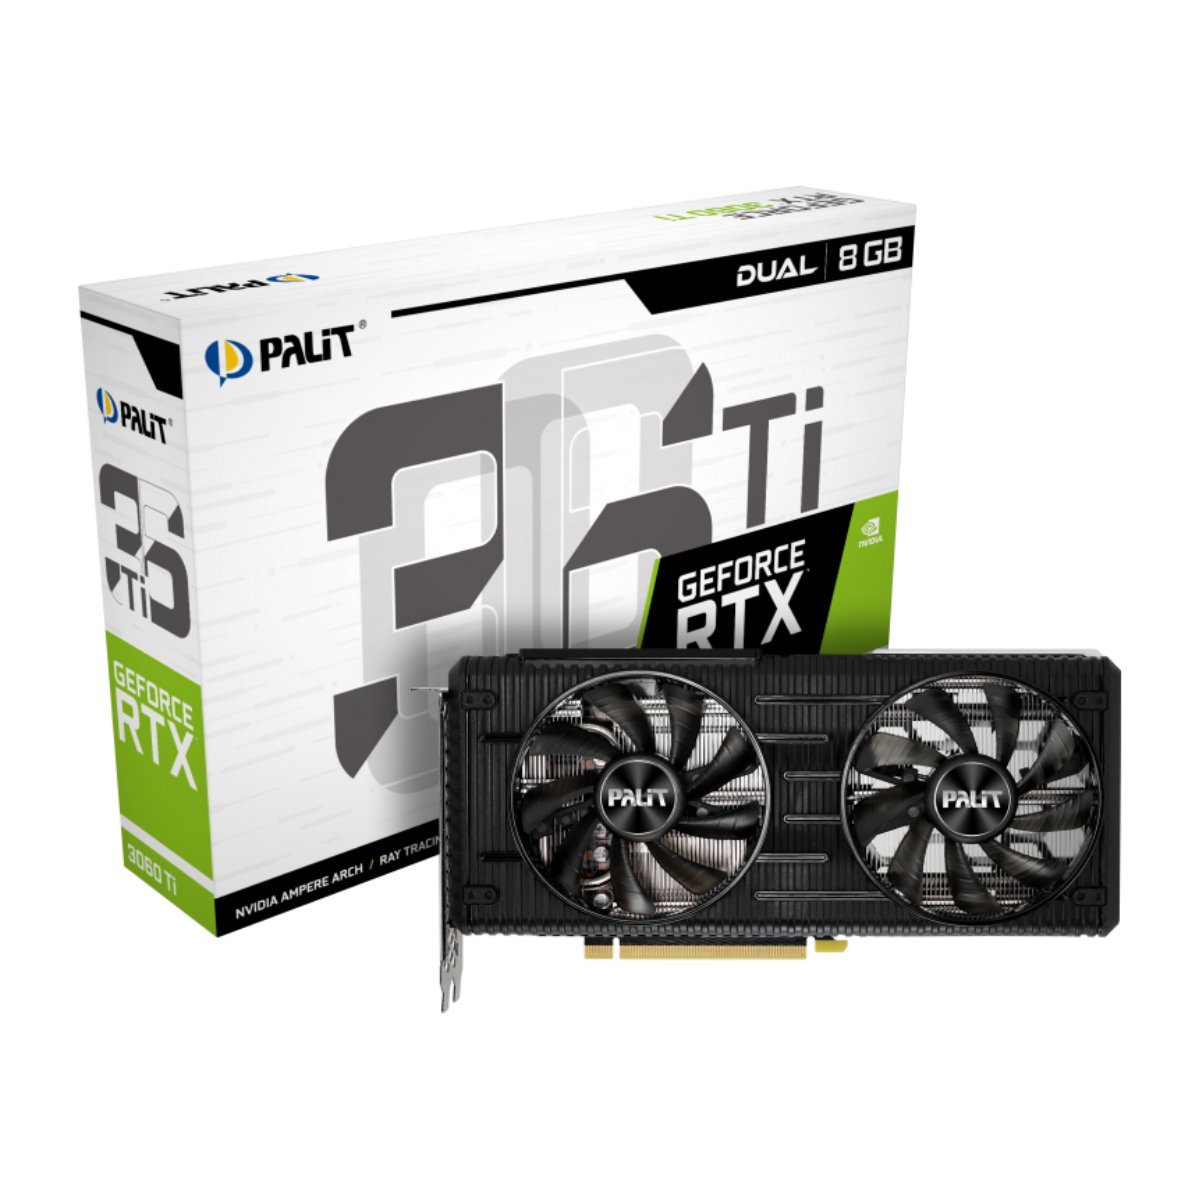 Palit GeForce RTX 3060Ti Dual LHR 8GB GDDR6 - Store 974 | ستور ٩٧٤